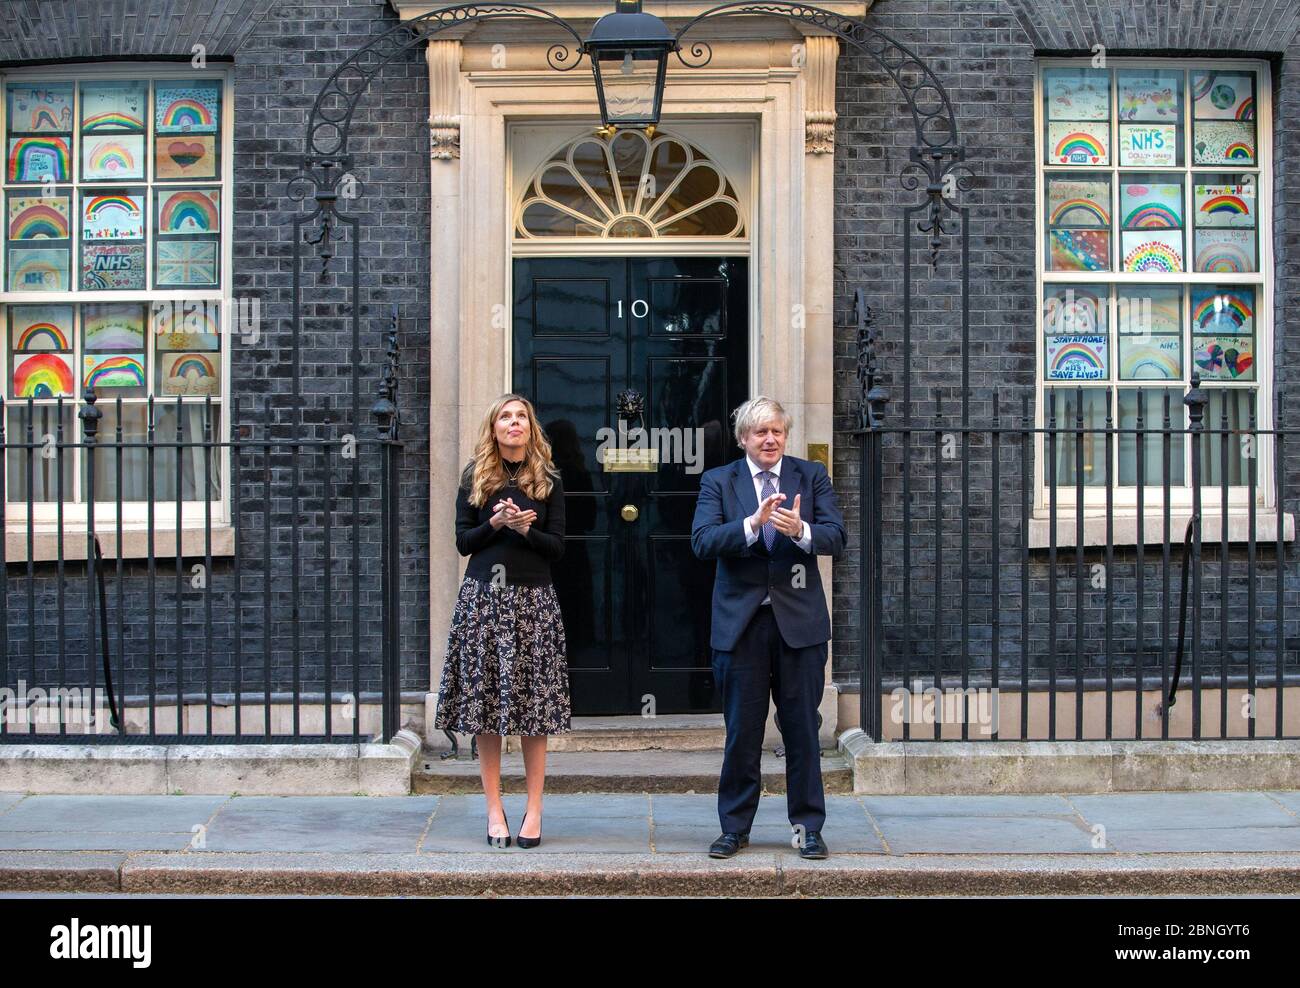 Premierminister Boris Johnson wird auf den Stufen der Downing Street 10 von Verlobter Carrie Symonds begleitet, um "Clap for Carers" zur Unterstützung des NHS zu unterstützen. Stockfoto